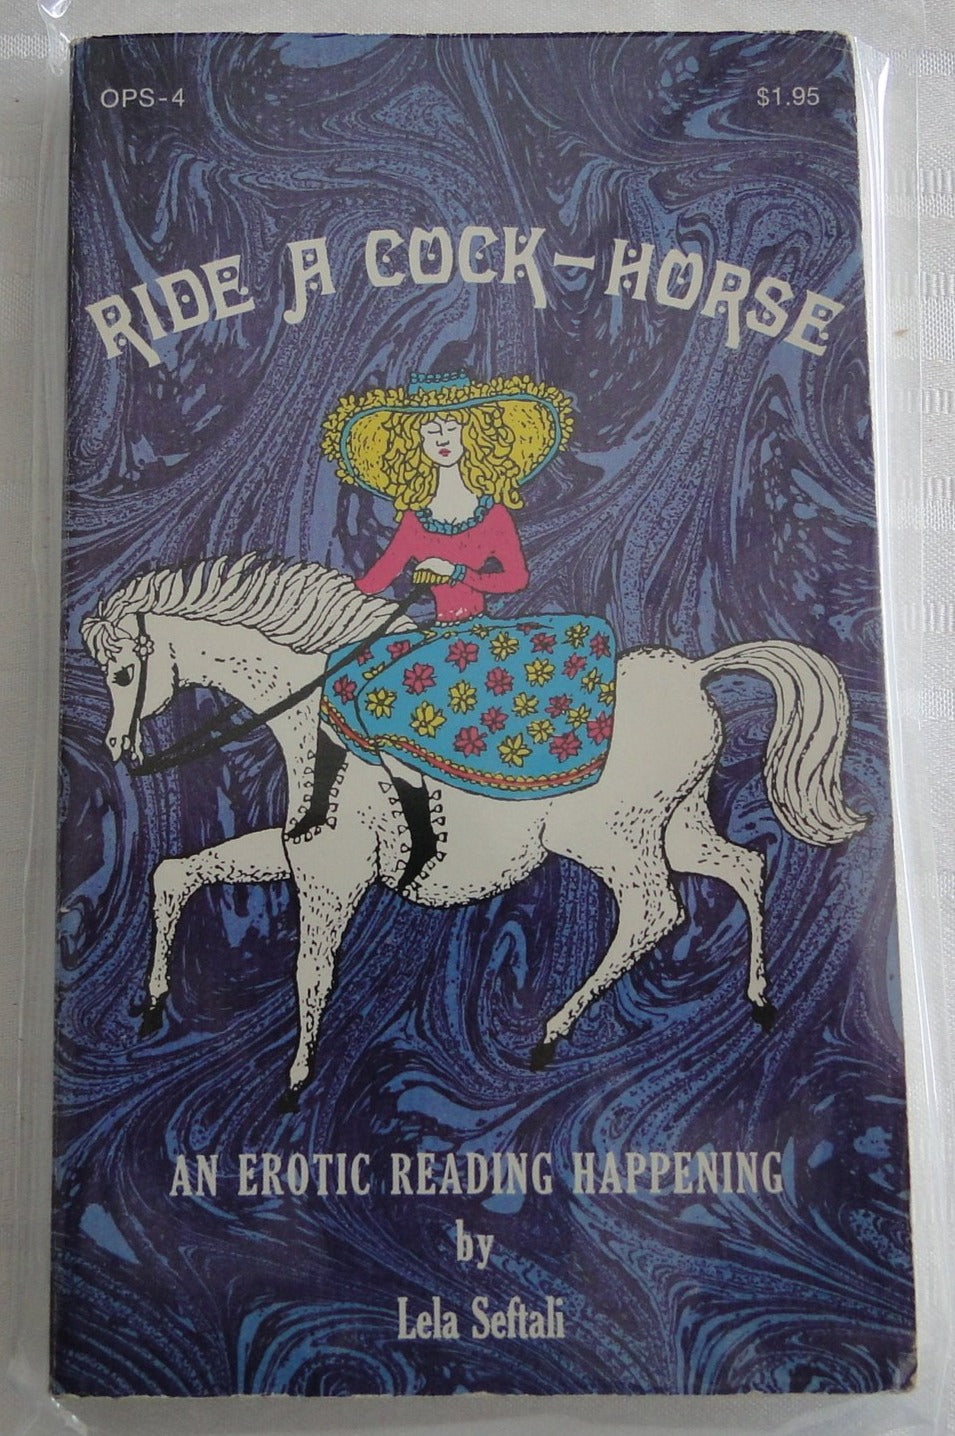 Vintage Adult Paperback Novel/Book Ride A Cock Horse